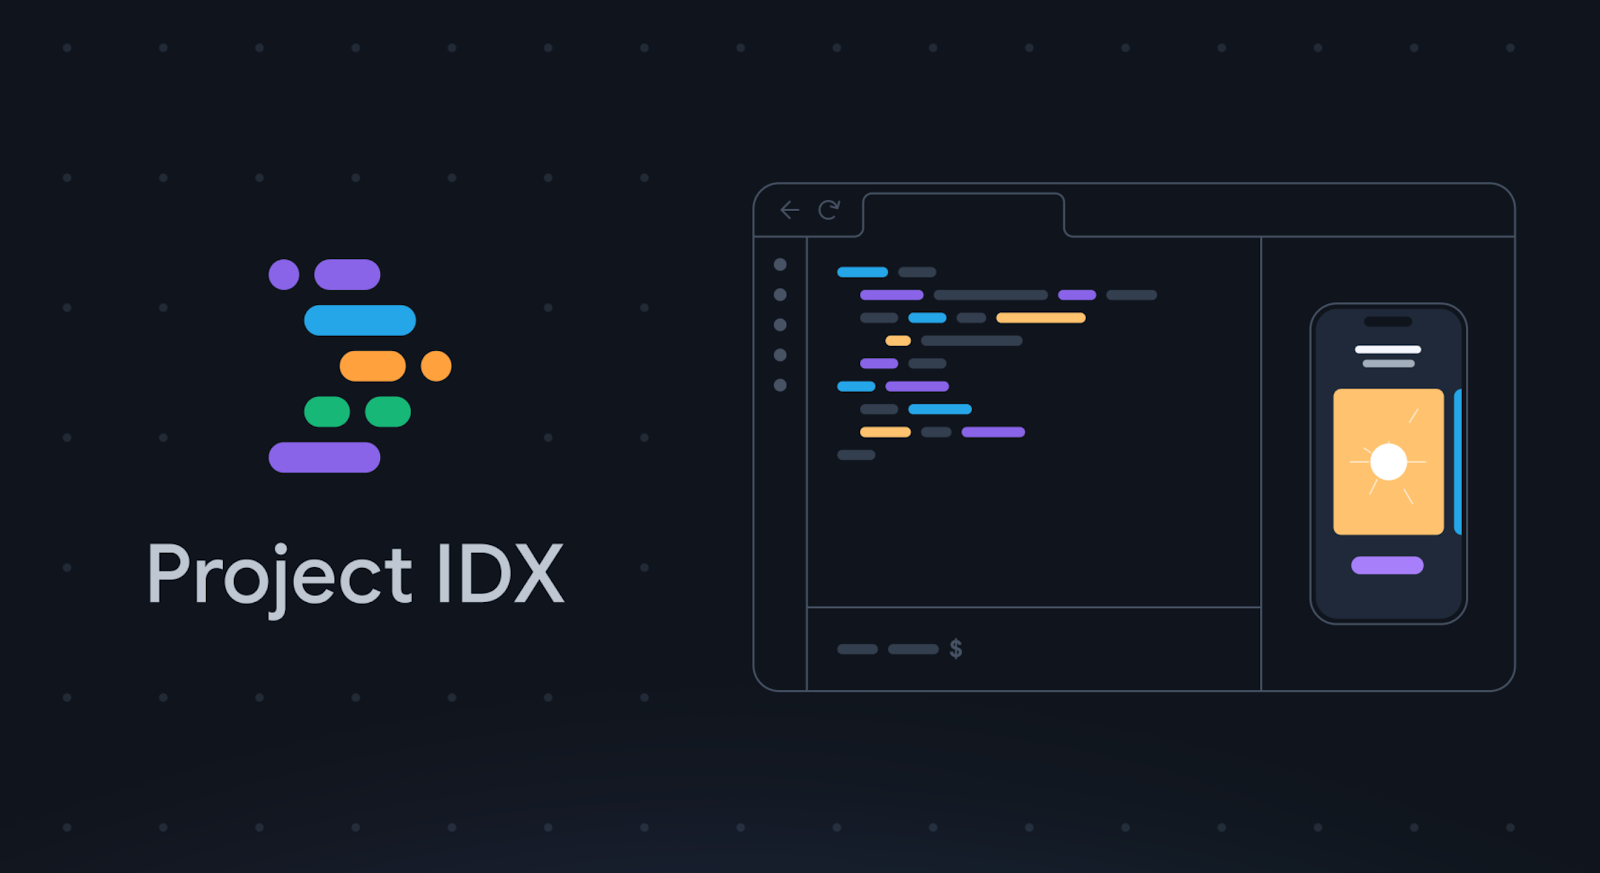 Project IDX de Google